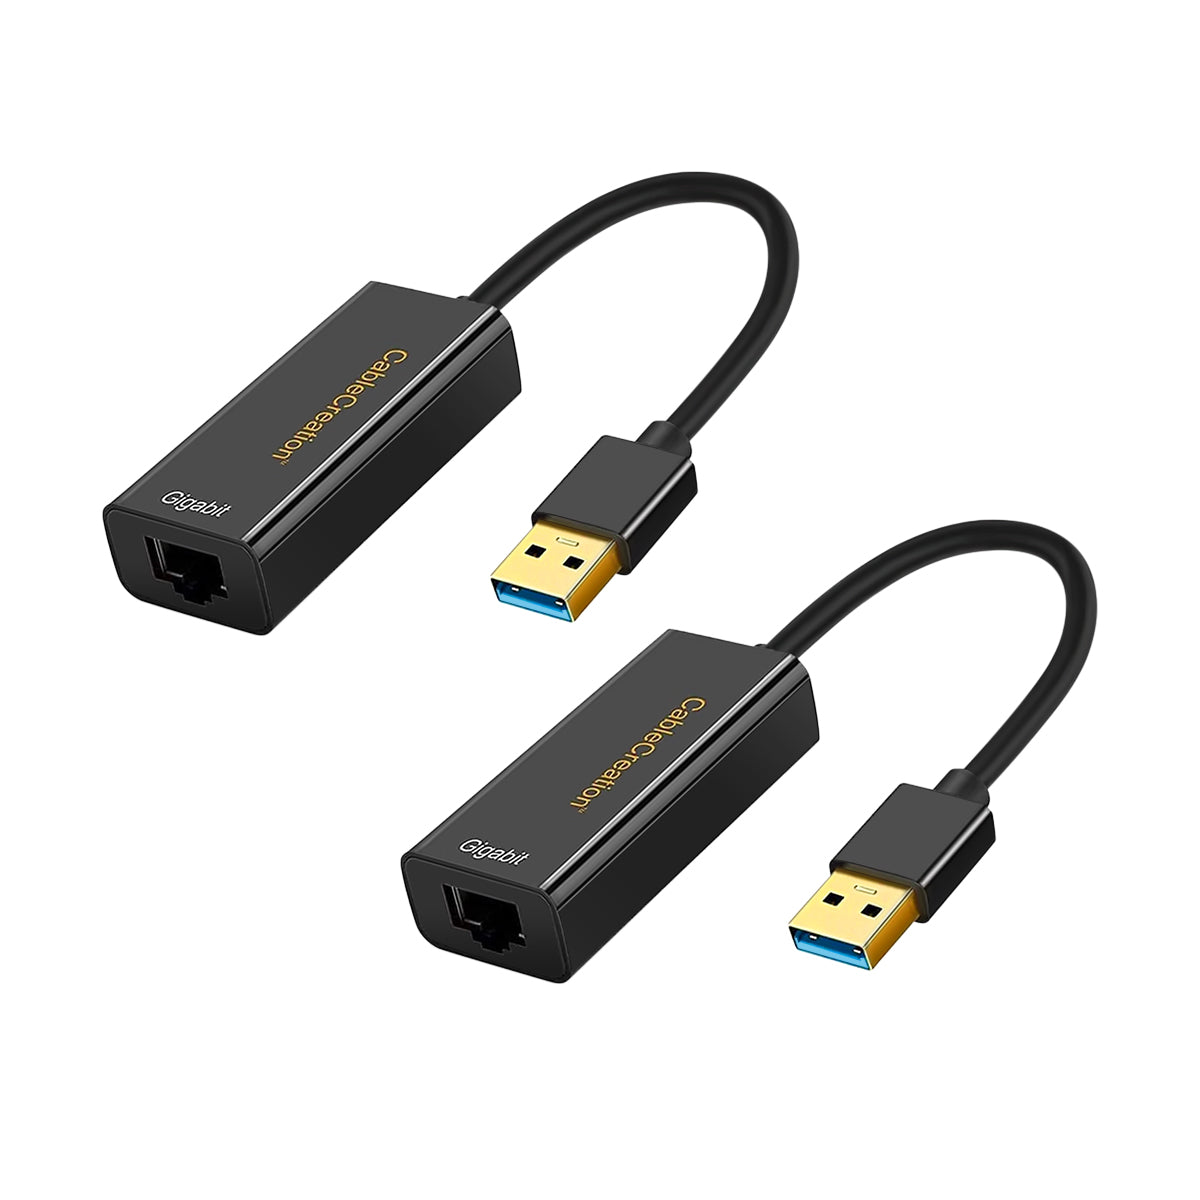 Adaptateur USB 2.0 type C au réseau Ethernet RJ45 10/100 avec concentrateur  3 ports USB de type A